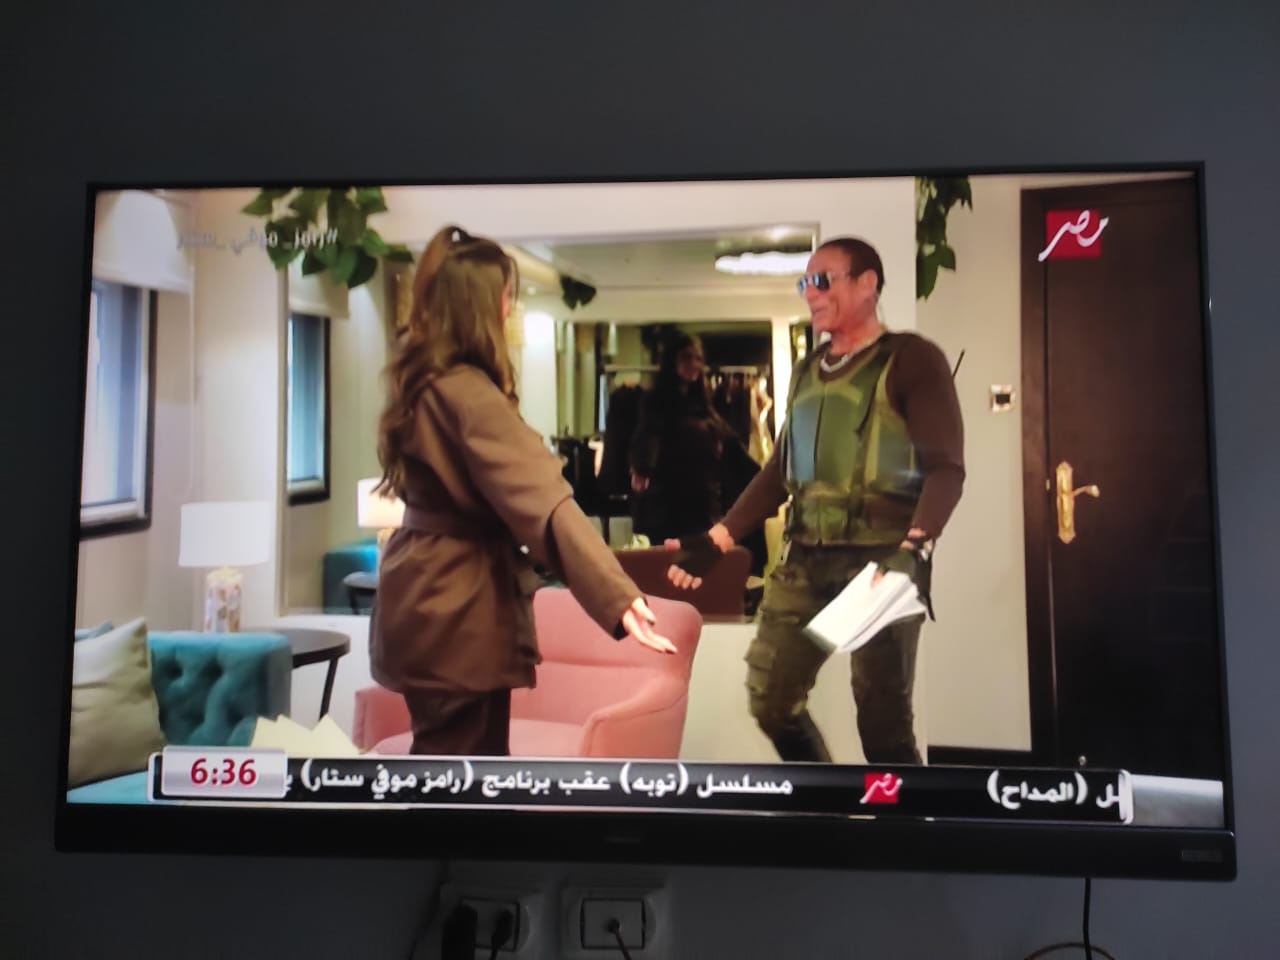 العود مشدود والقوام مفرود.. ملخص إيفيهات رامز جلال في حلقة درة 1